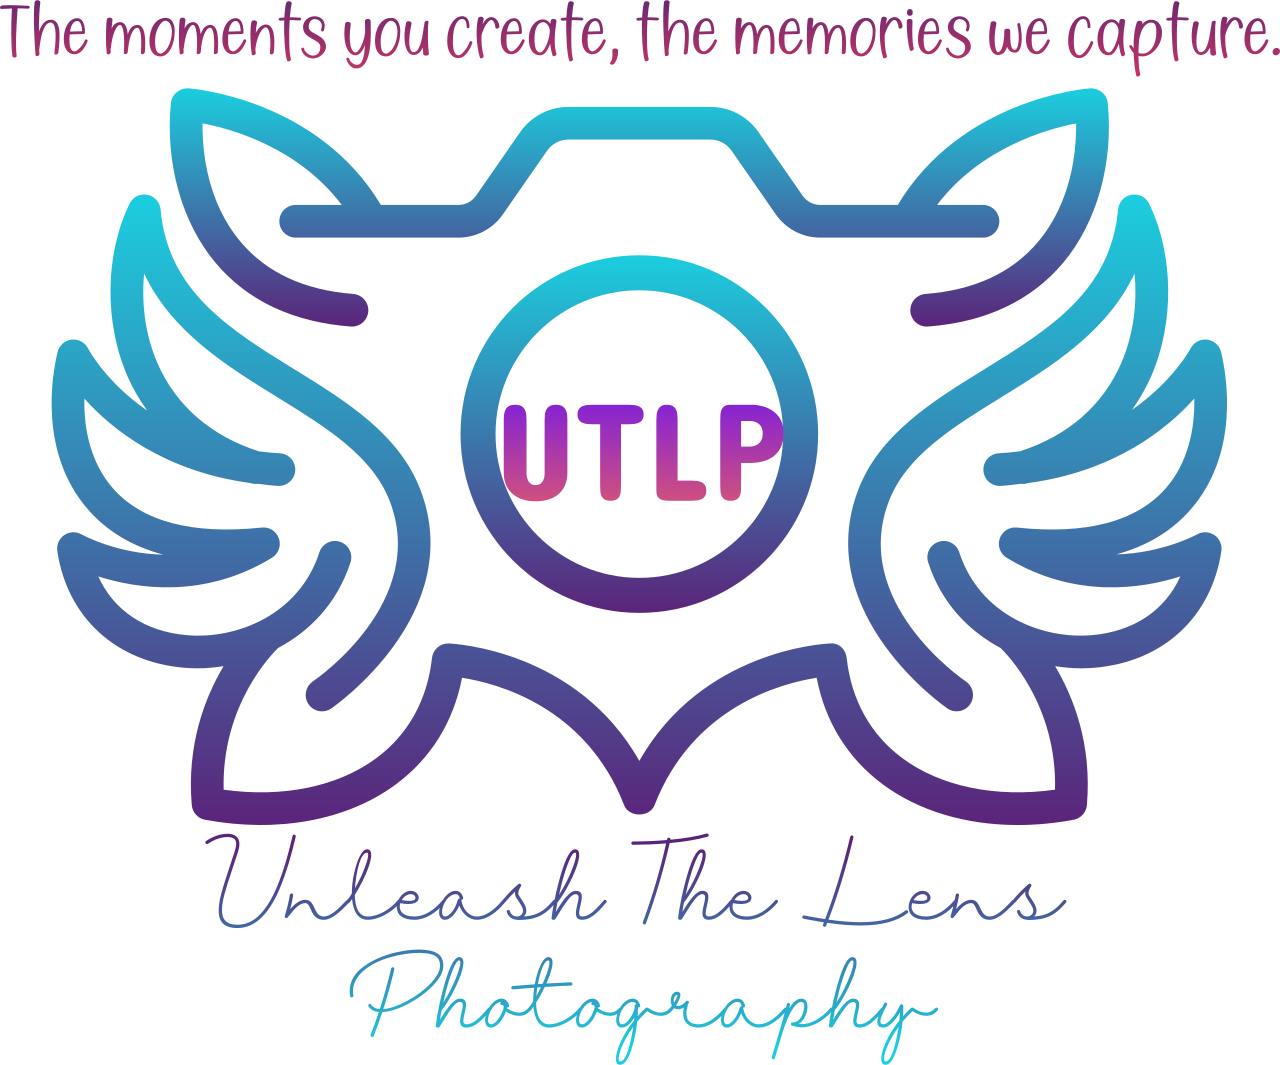 Unleash The Lens's web page